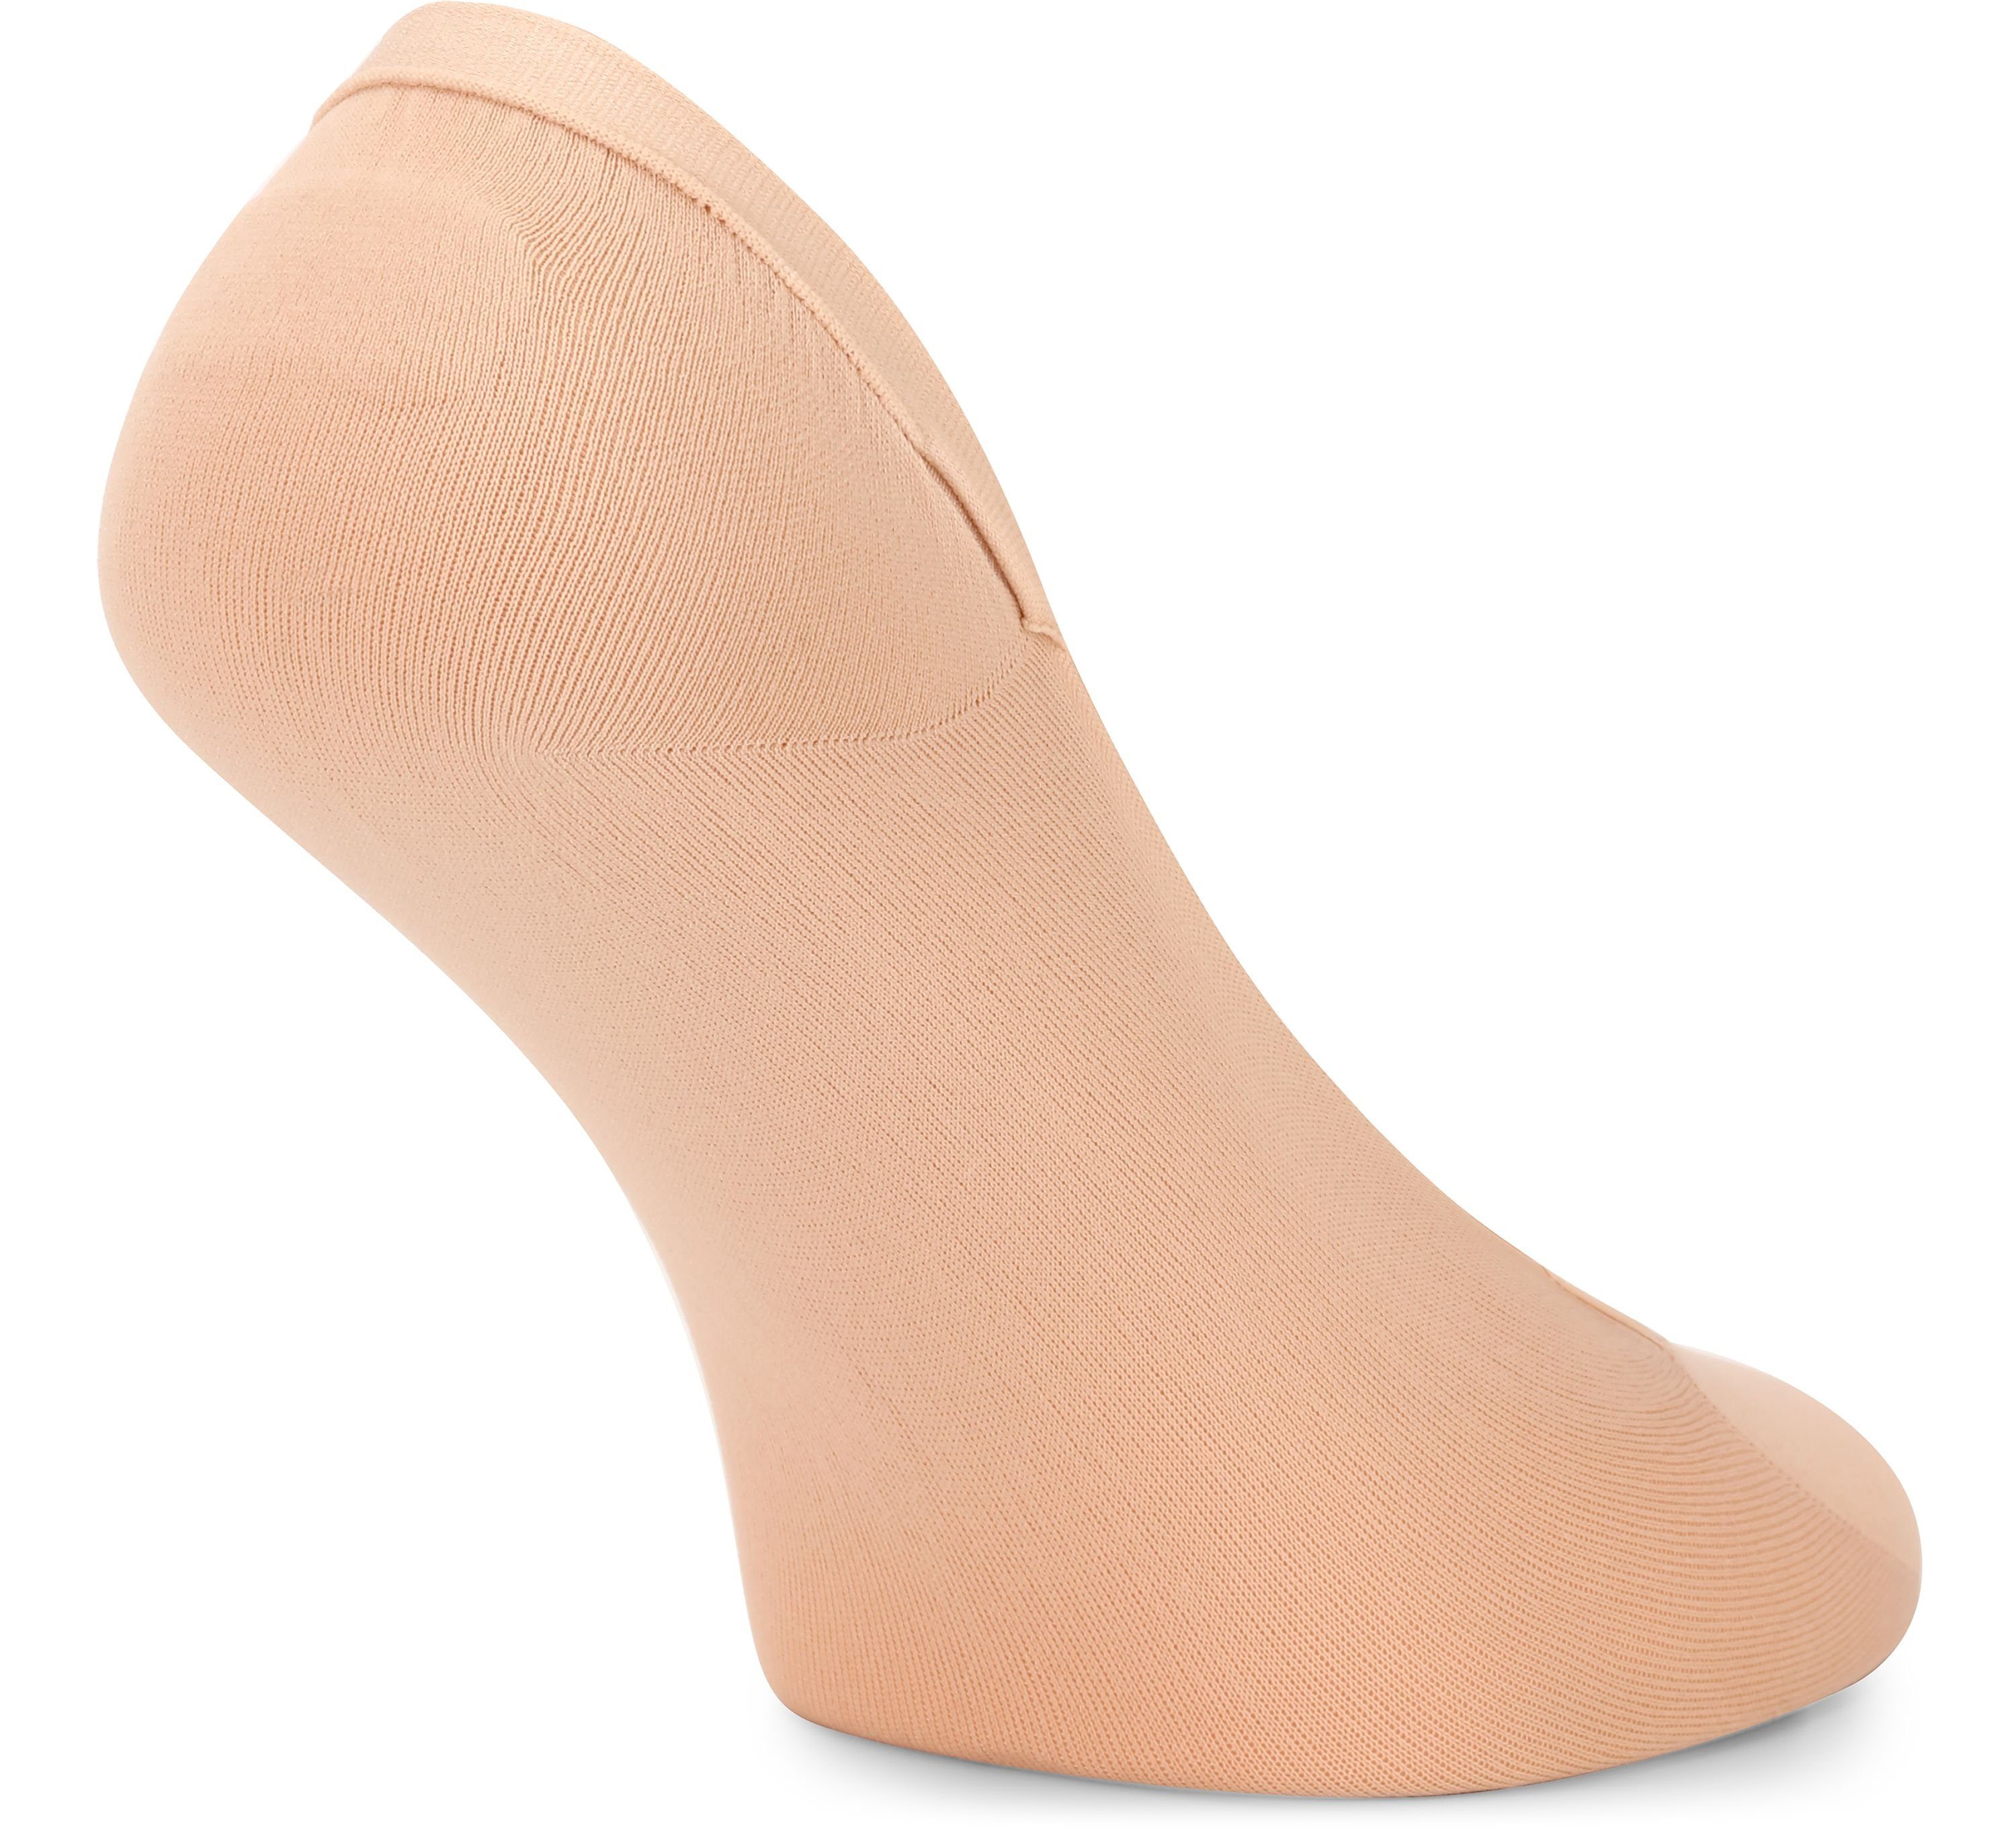 Merry Style Socken Damen Atmungsaktive Socken - Halbsocken Füßlinge Sneaker 4Pack Beige MSGI046